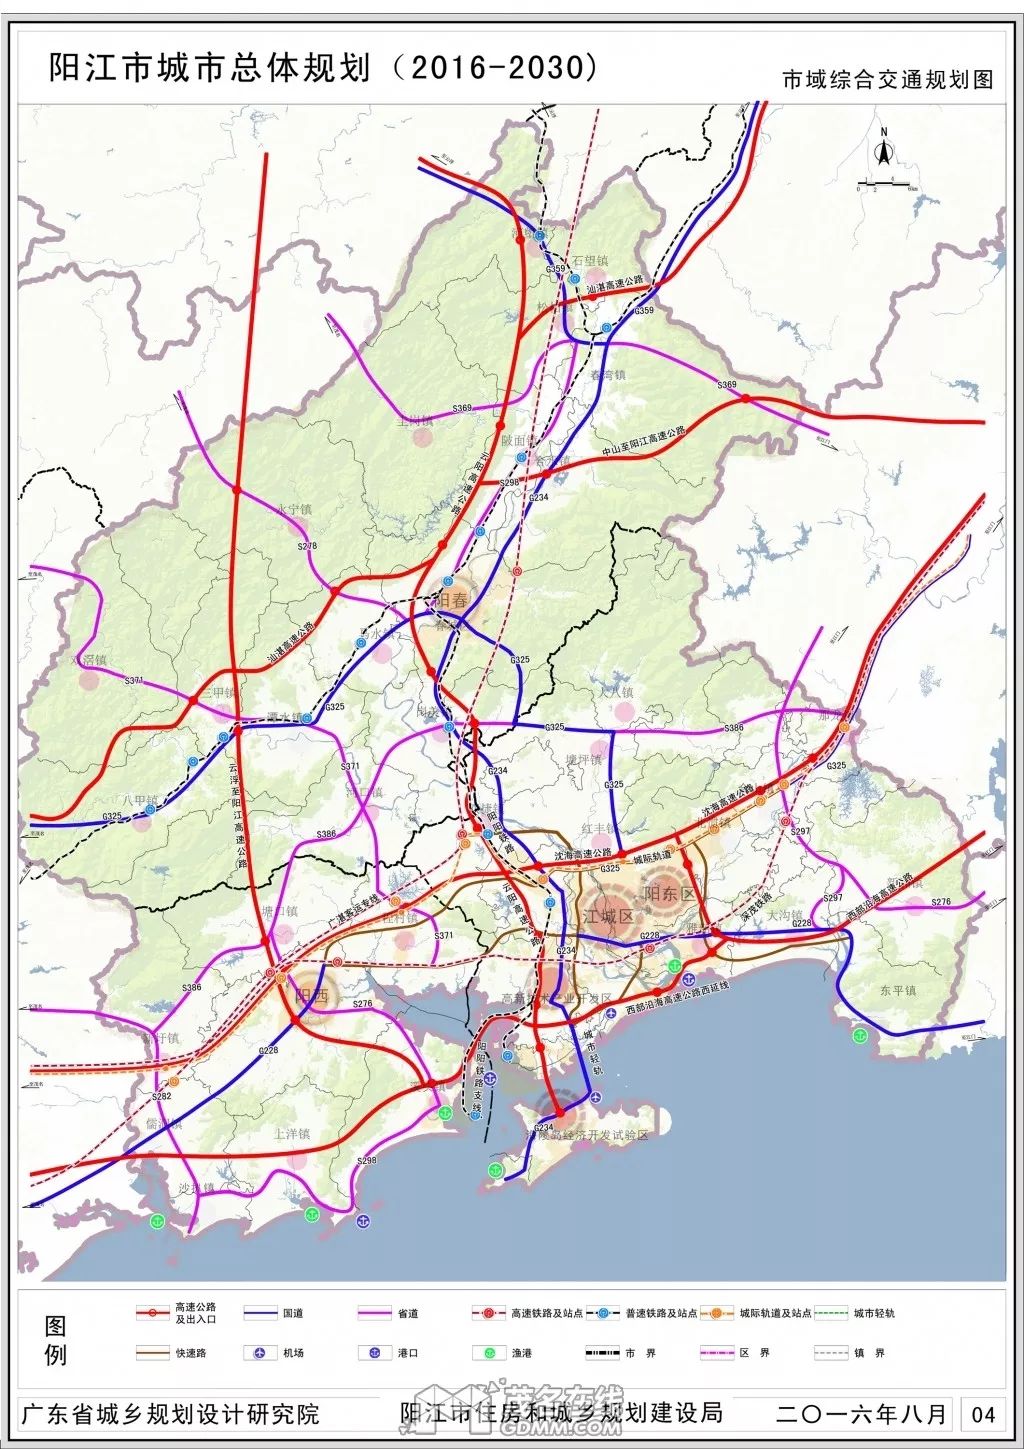 ▼阳江市综合交通规划图同时也便了轻轨沿途的市民出行大大方便了过来